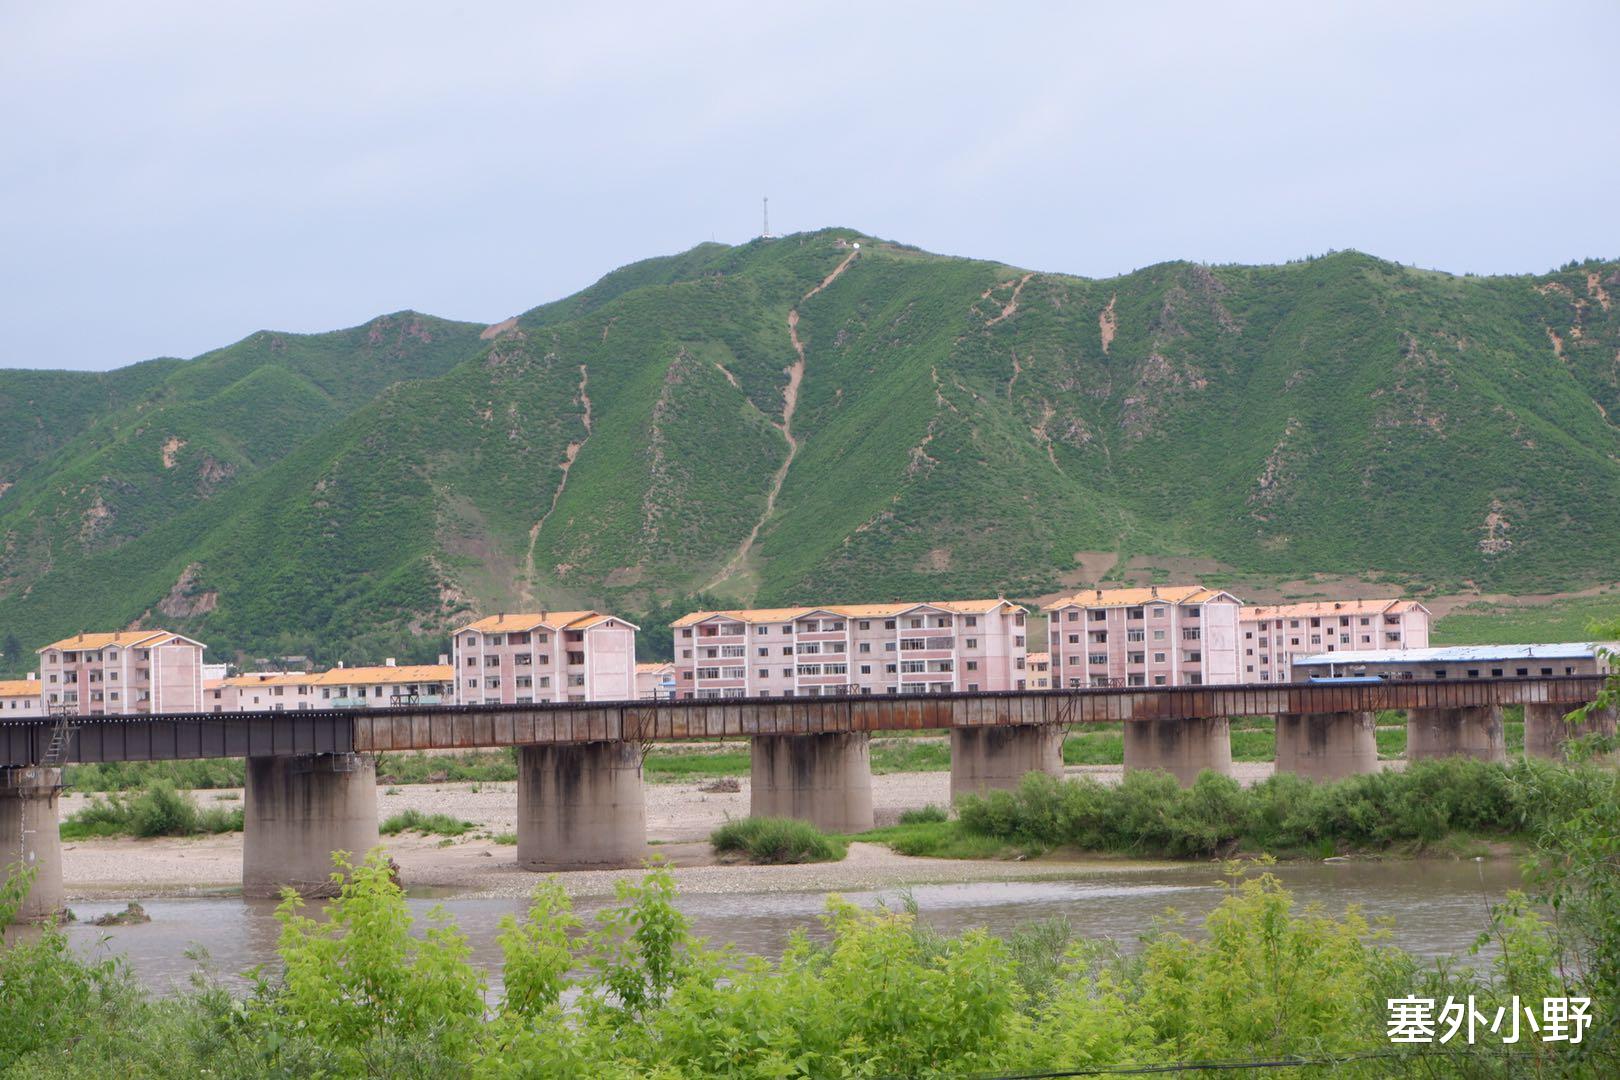 中朝邊境城市，河對岸就是朝鮮，山上樹木全部砍光防止朝鮮人偷渡-圖8